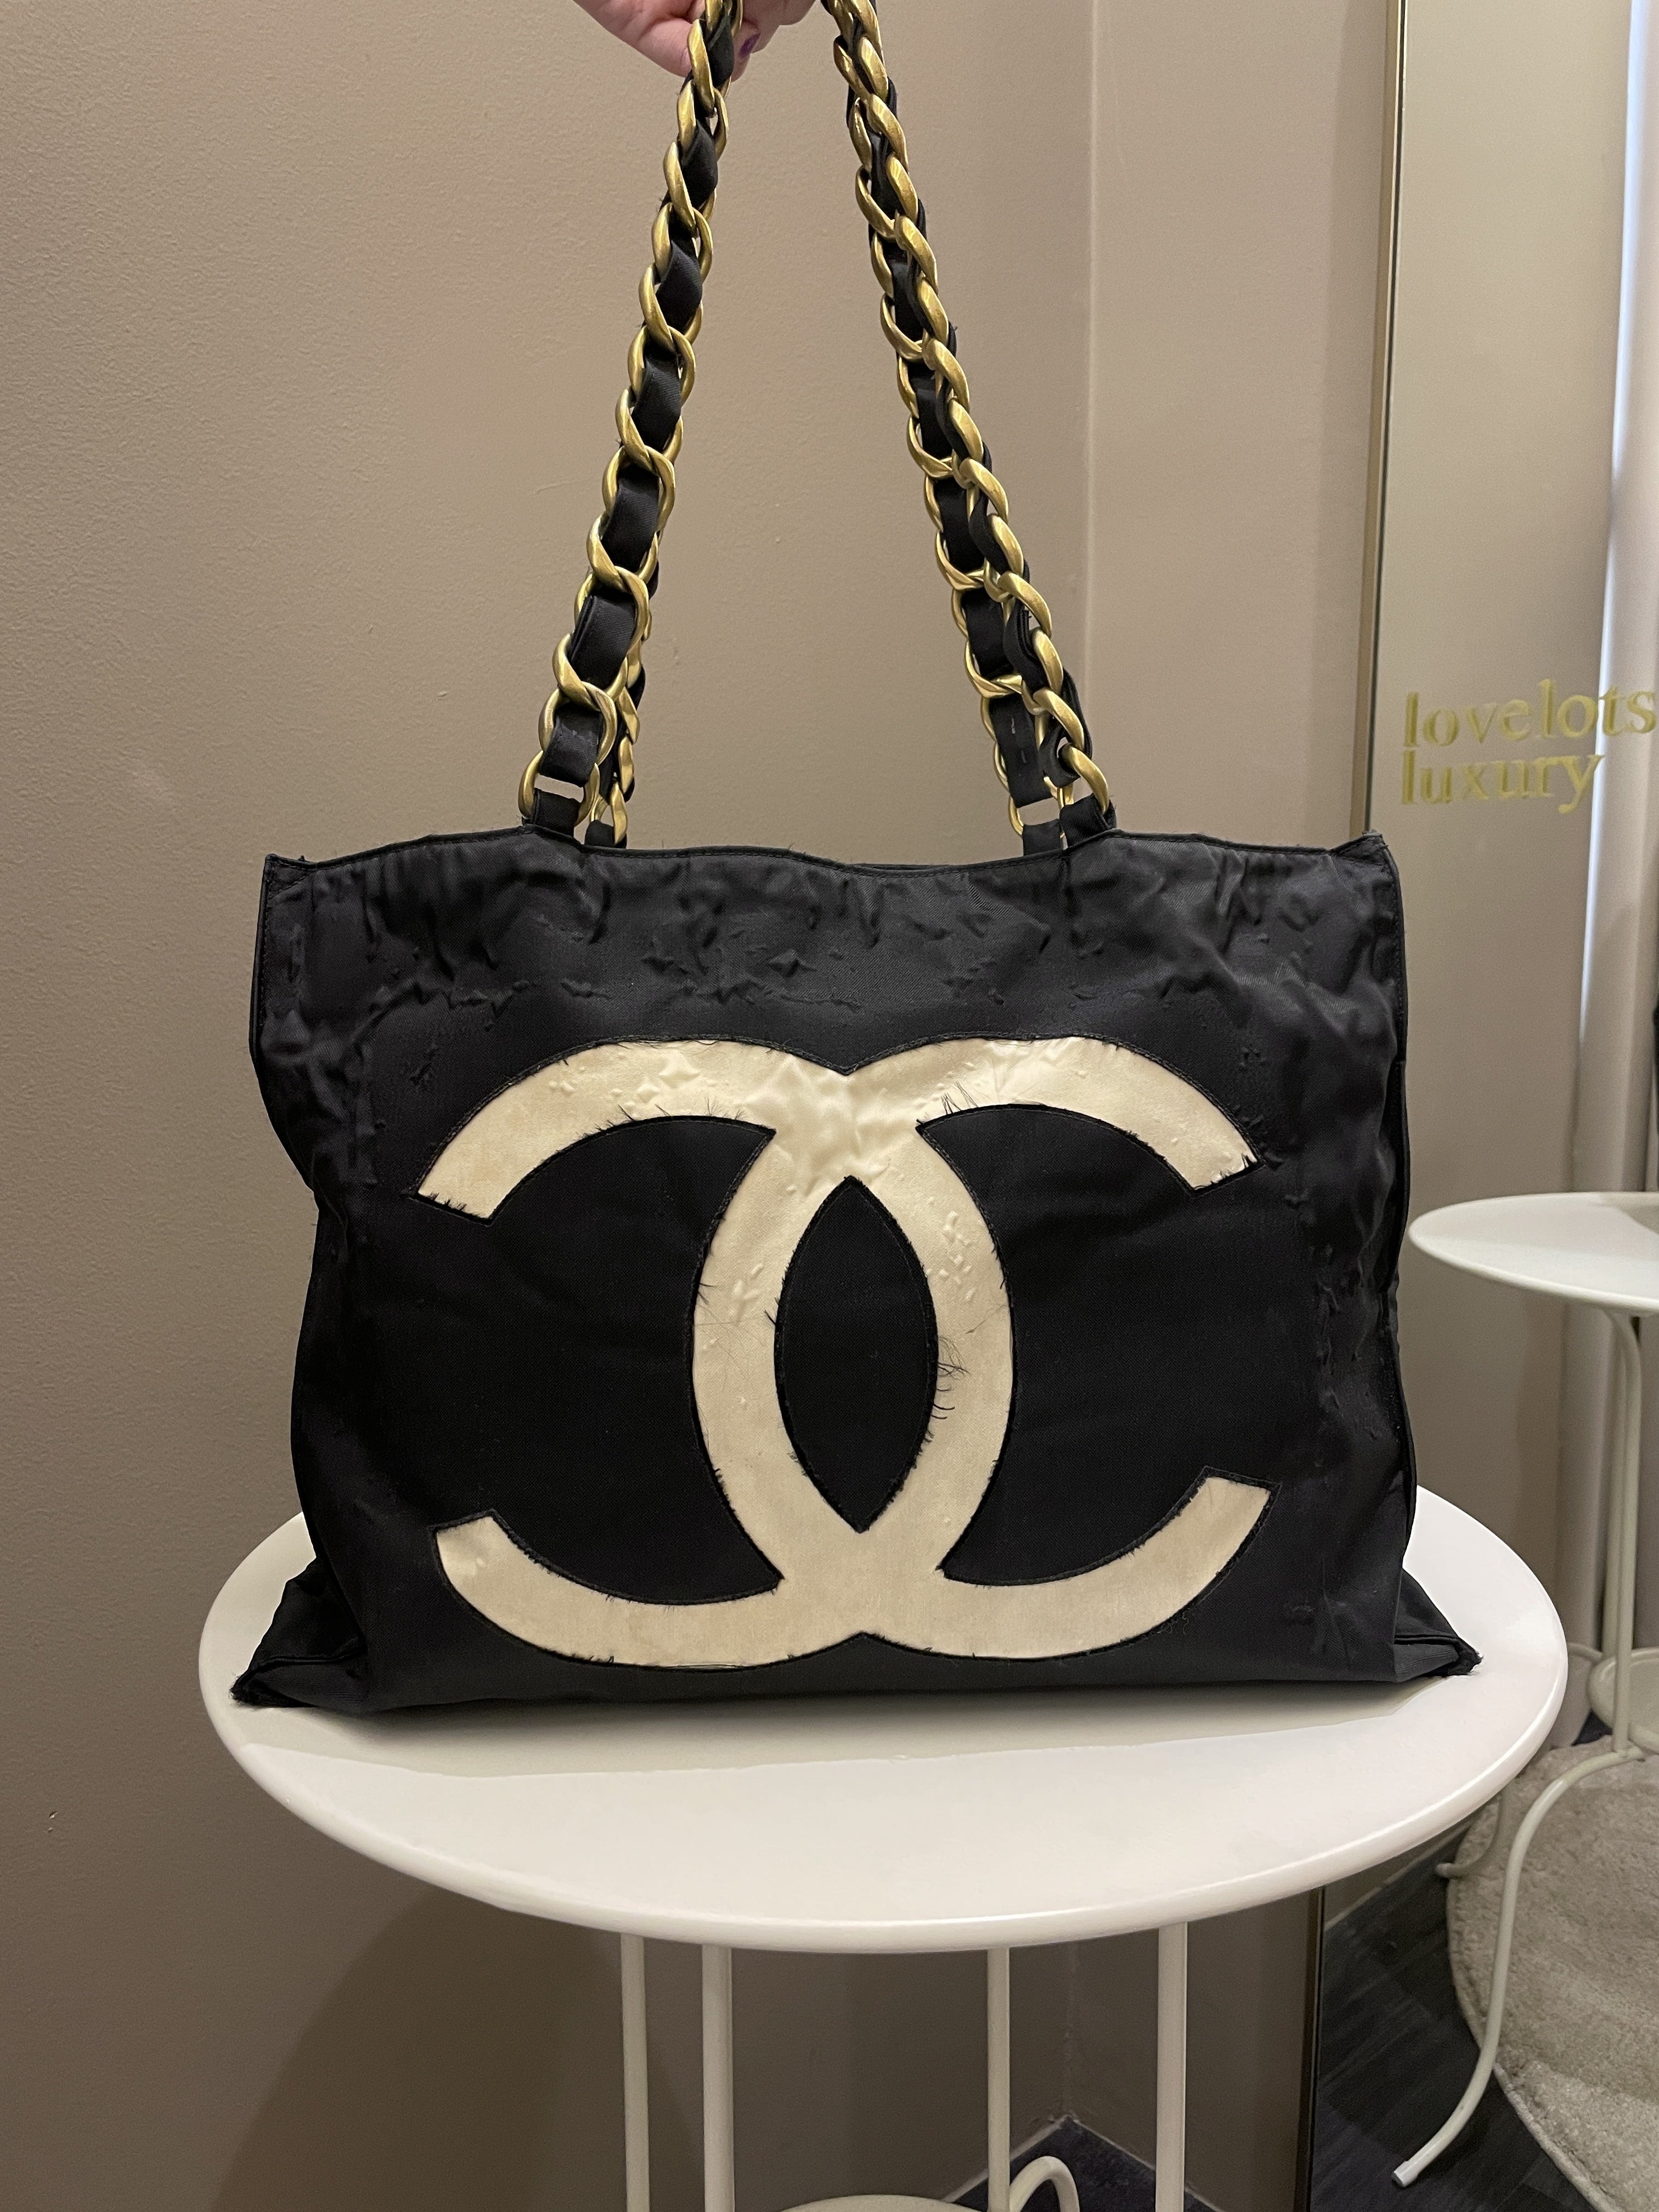 Chanel Tote Handbag For Women - Goodsdream